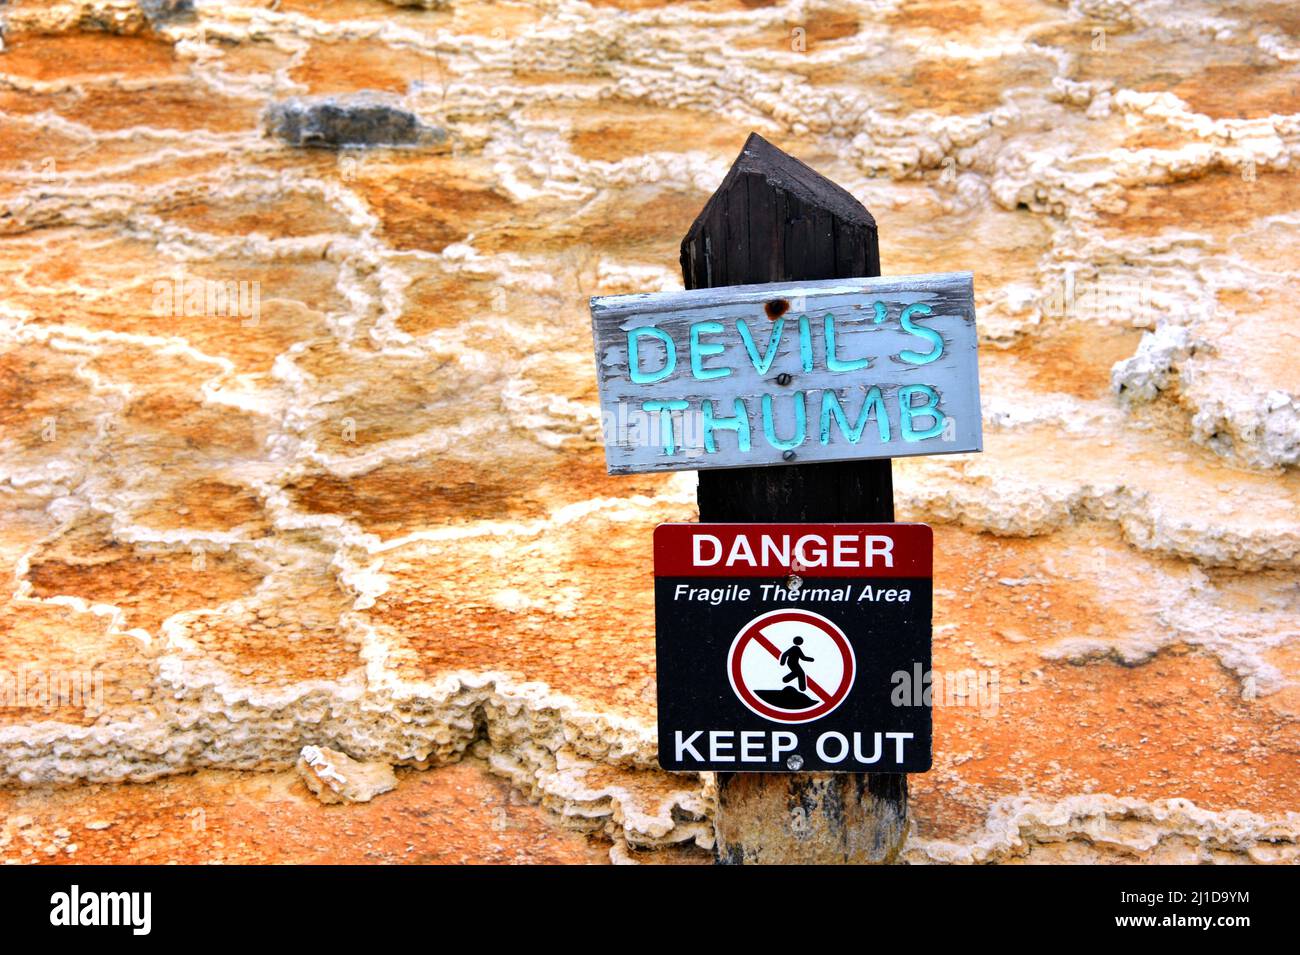 Il cartello identifica il Devil's Thumb e avverte i visitatori del Parco Nazionale di Yellowstone del pericolo dell'area termale. Il cartello è in legno con lettera di aqua Foto Stock